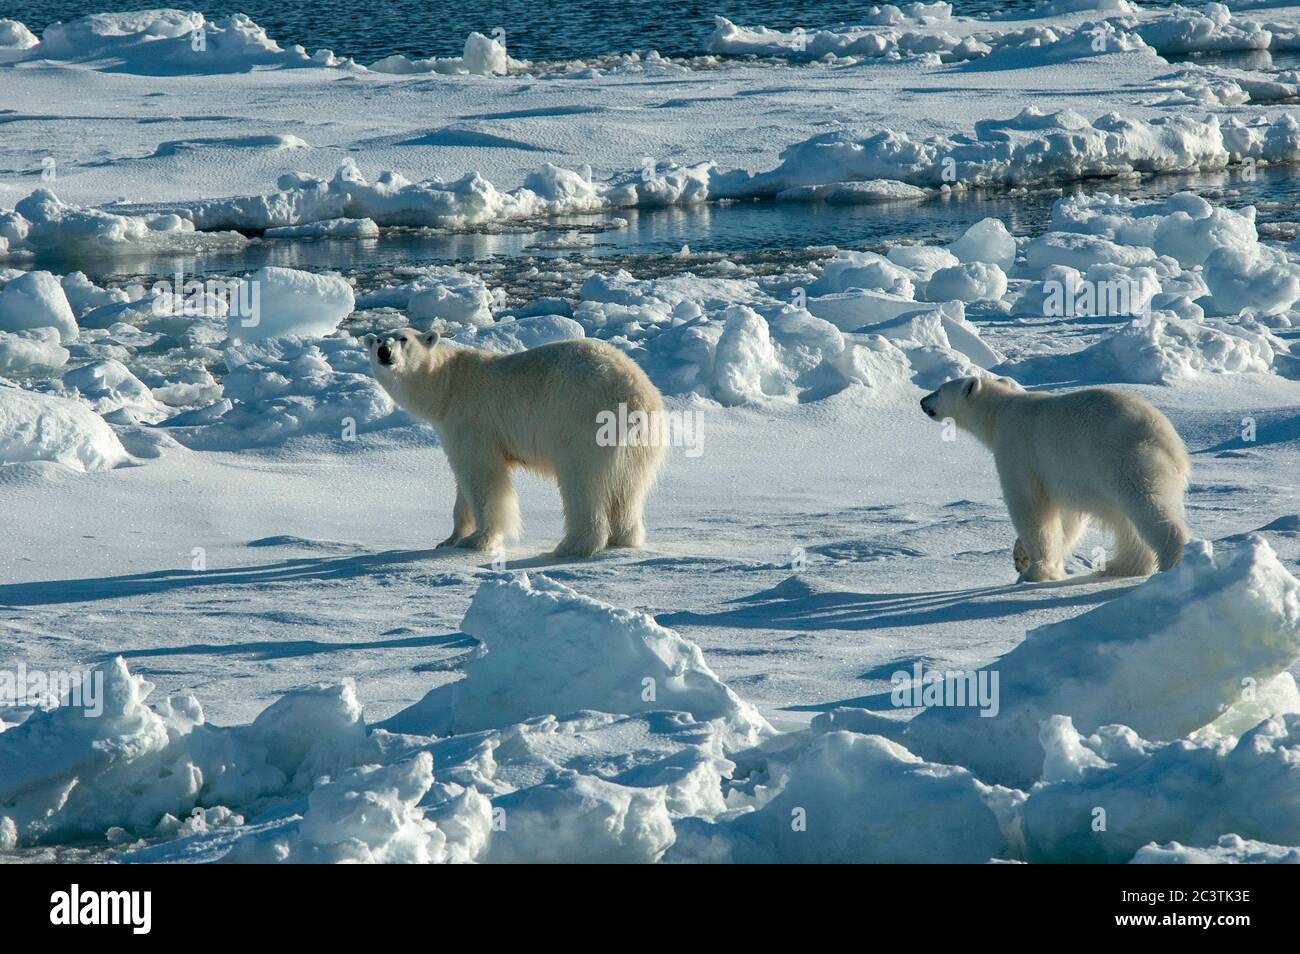 Ours polaire (Ursus maritimus), Béass polaire marchant avec l'ours cub sur la banquise, vue latérale, Norvège, Svalbard Banque D'Images